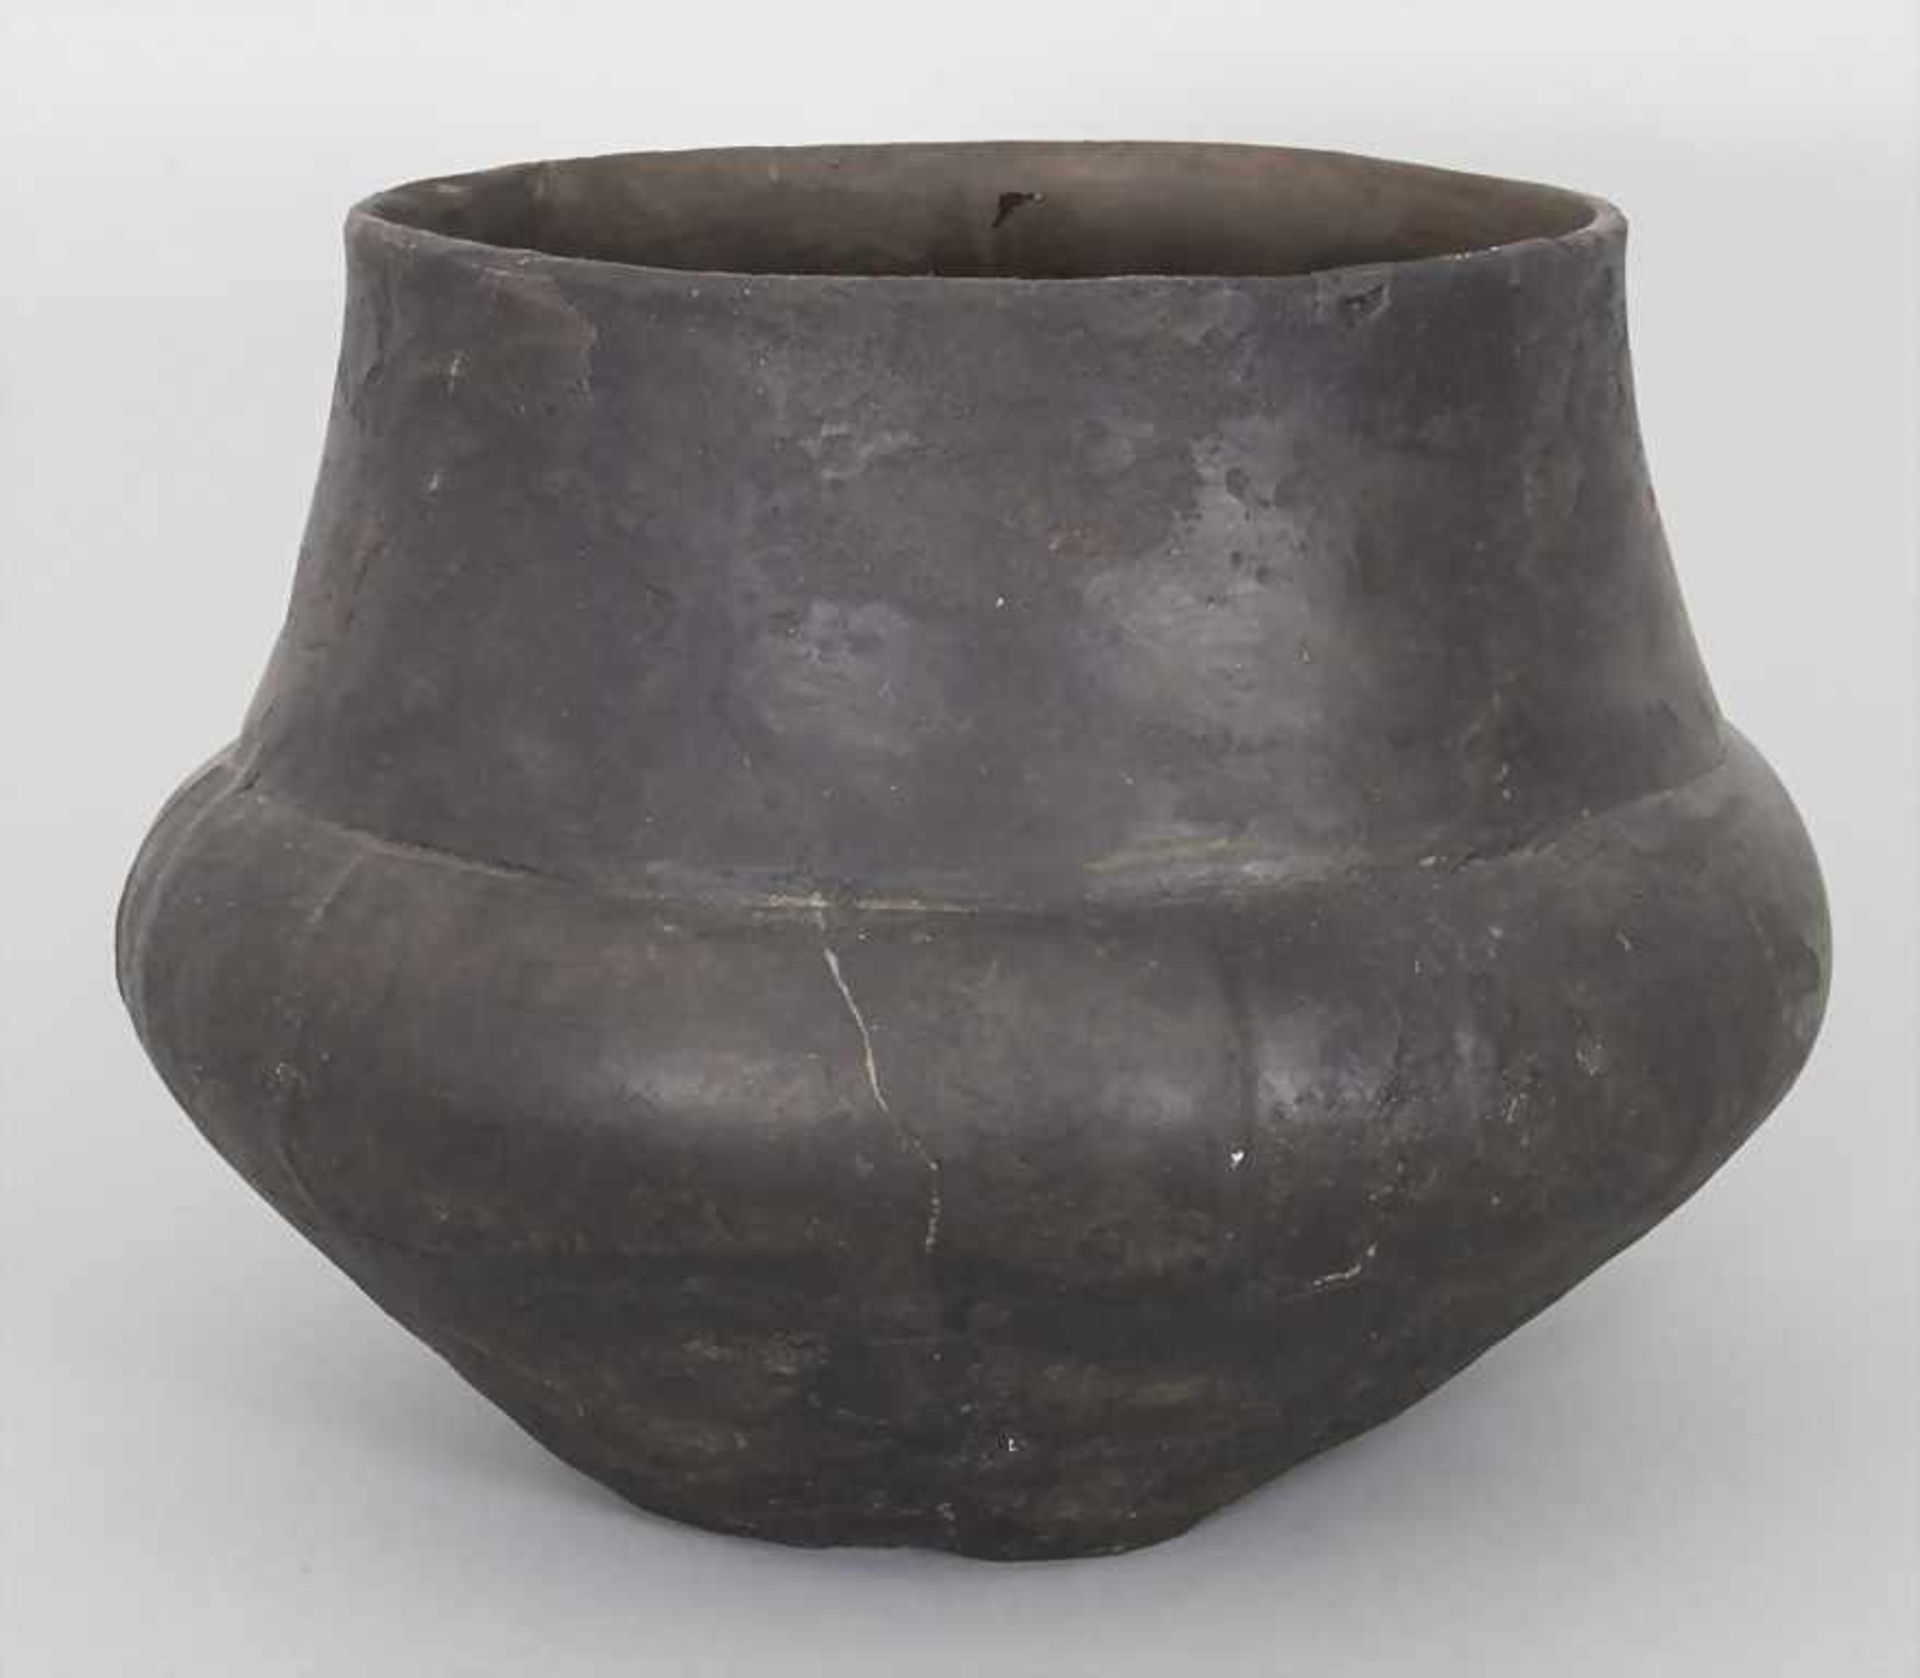 Bronzezeitliches Keramik-Gefäß / A Bronze Age ceramic vessel, Lausitzer Kultur, 9. - 6. Jh. v. Chr. - Image 4 of 6